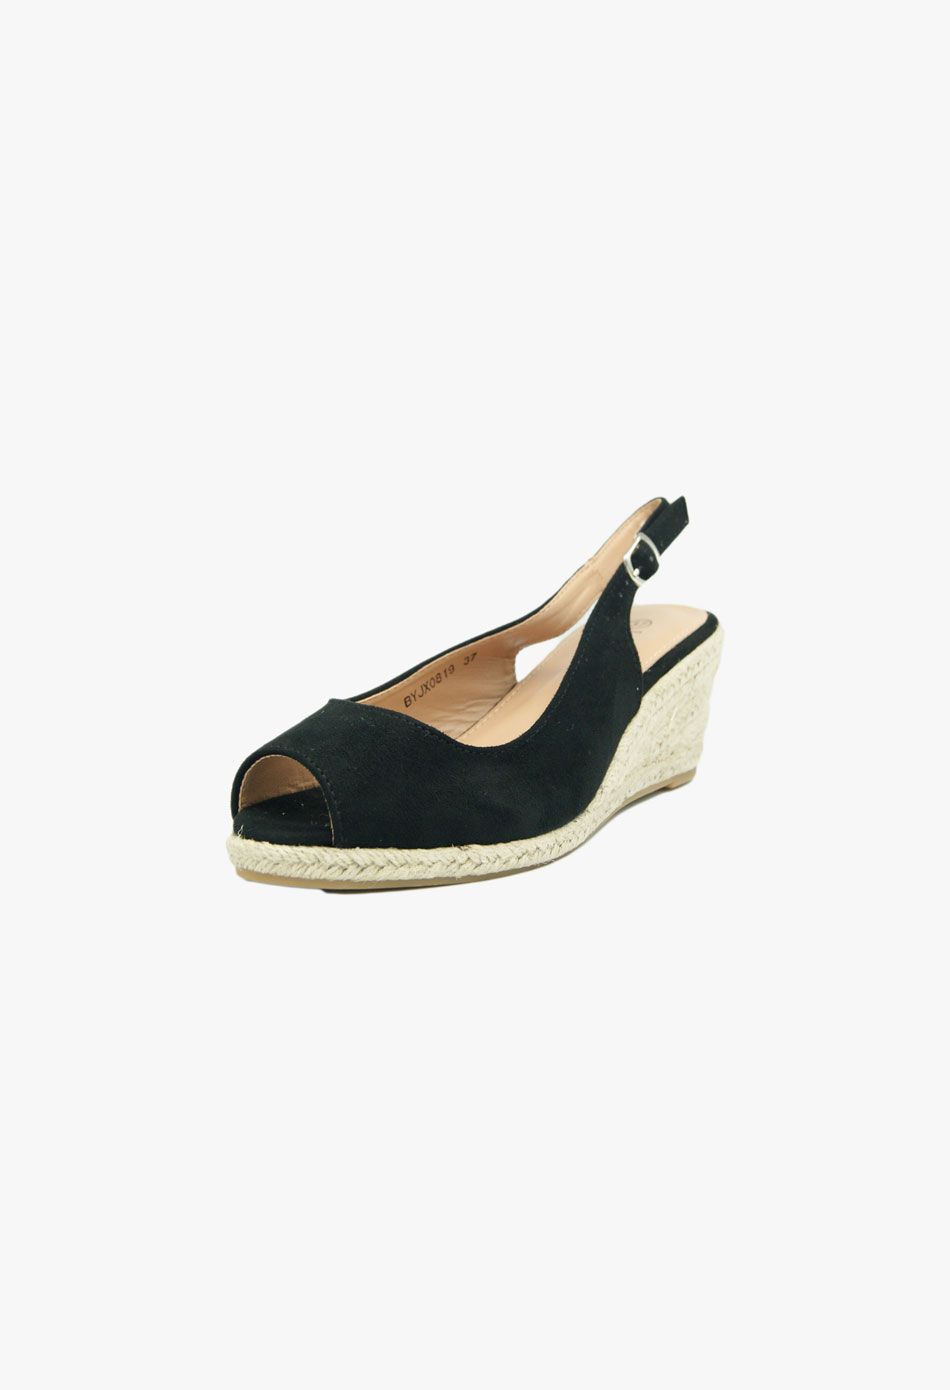 Πλατφόρμες Εσπαντρίγιες Open Heel Μαύρο / BYJX0819-black Ανοιχτά Παπούτσια joya.gr